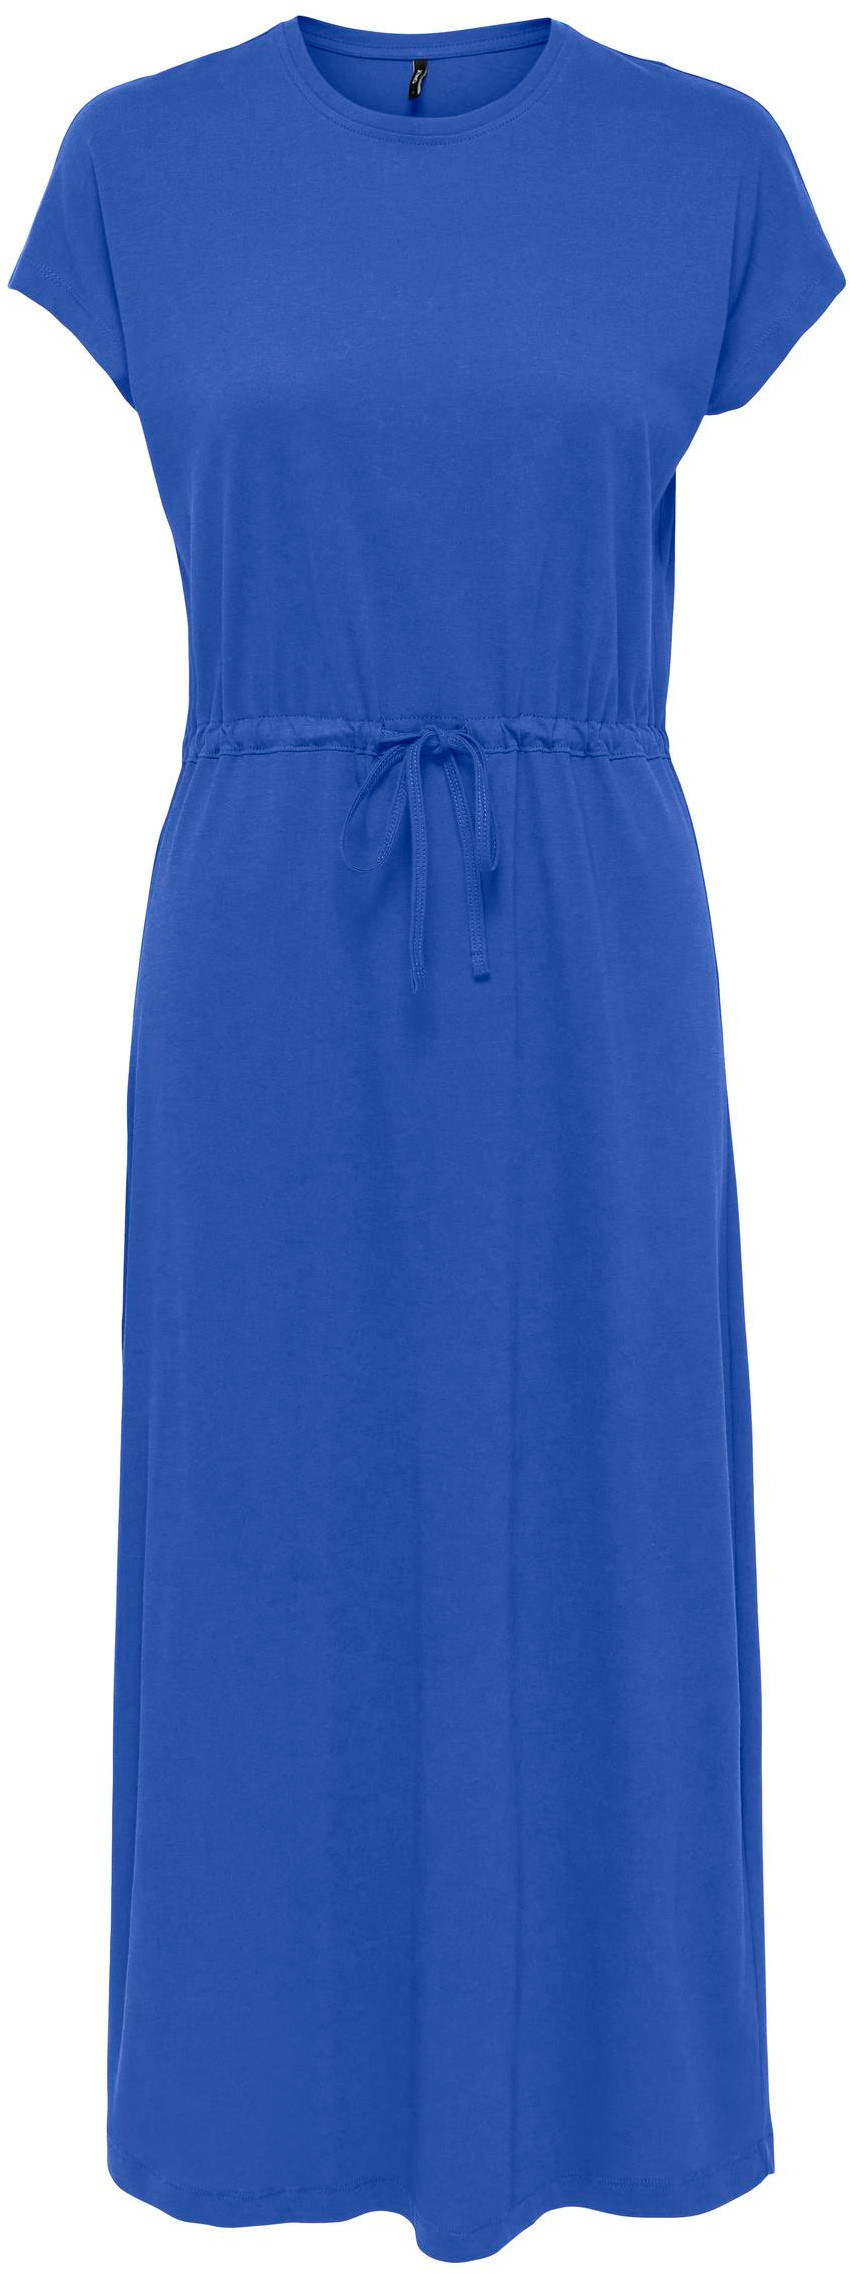 ONLY Dámske šaty ONLMAY Regular Fit 15257472 Dazzling Blue S